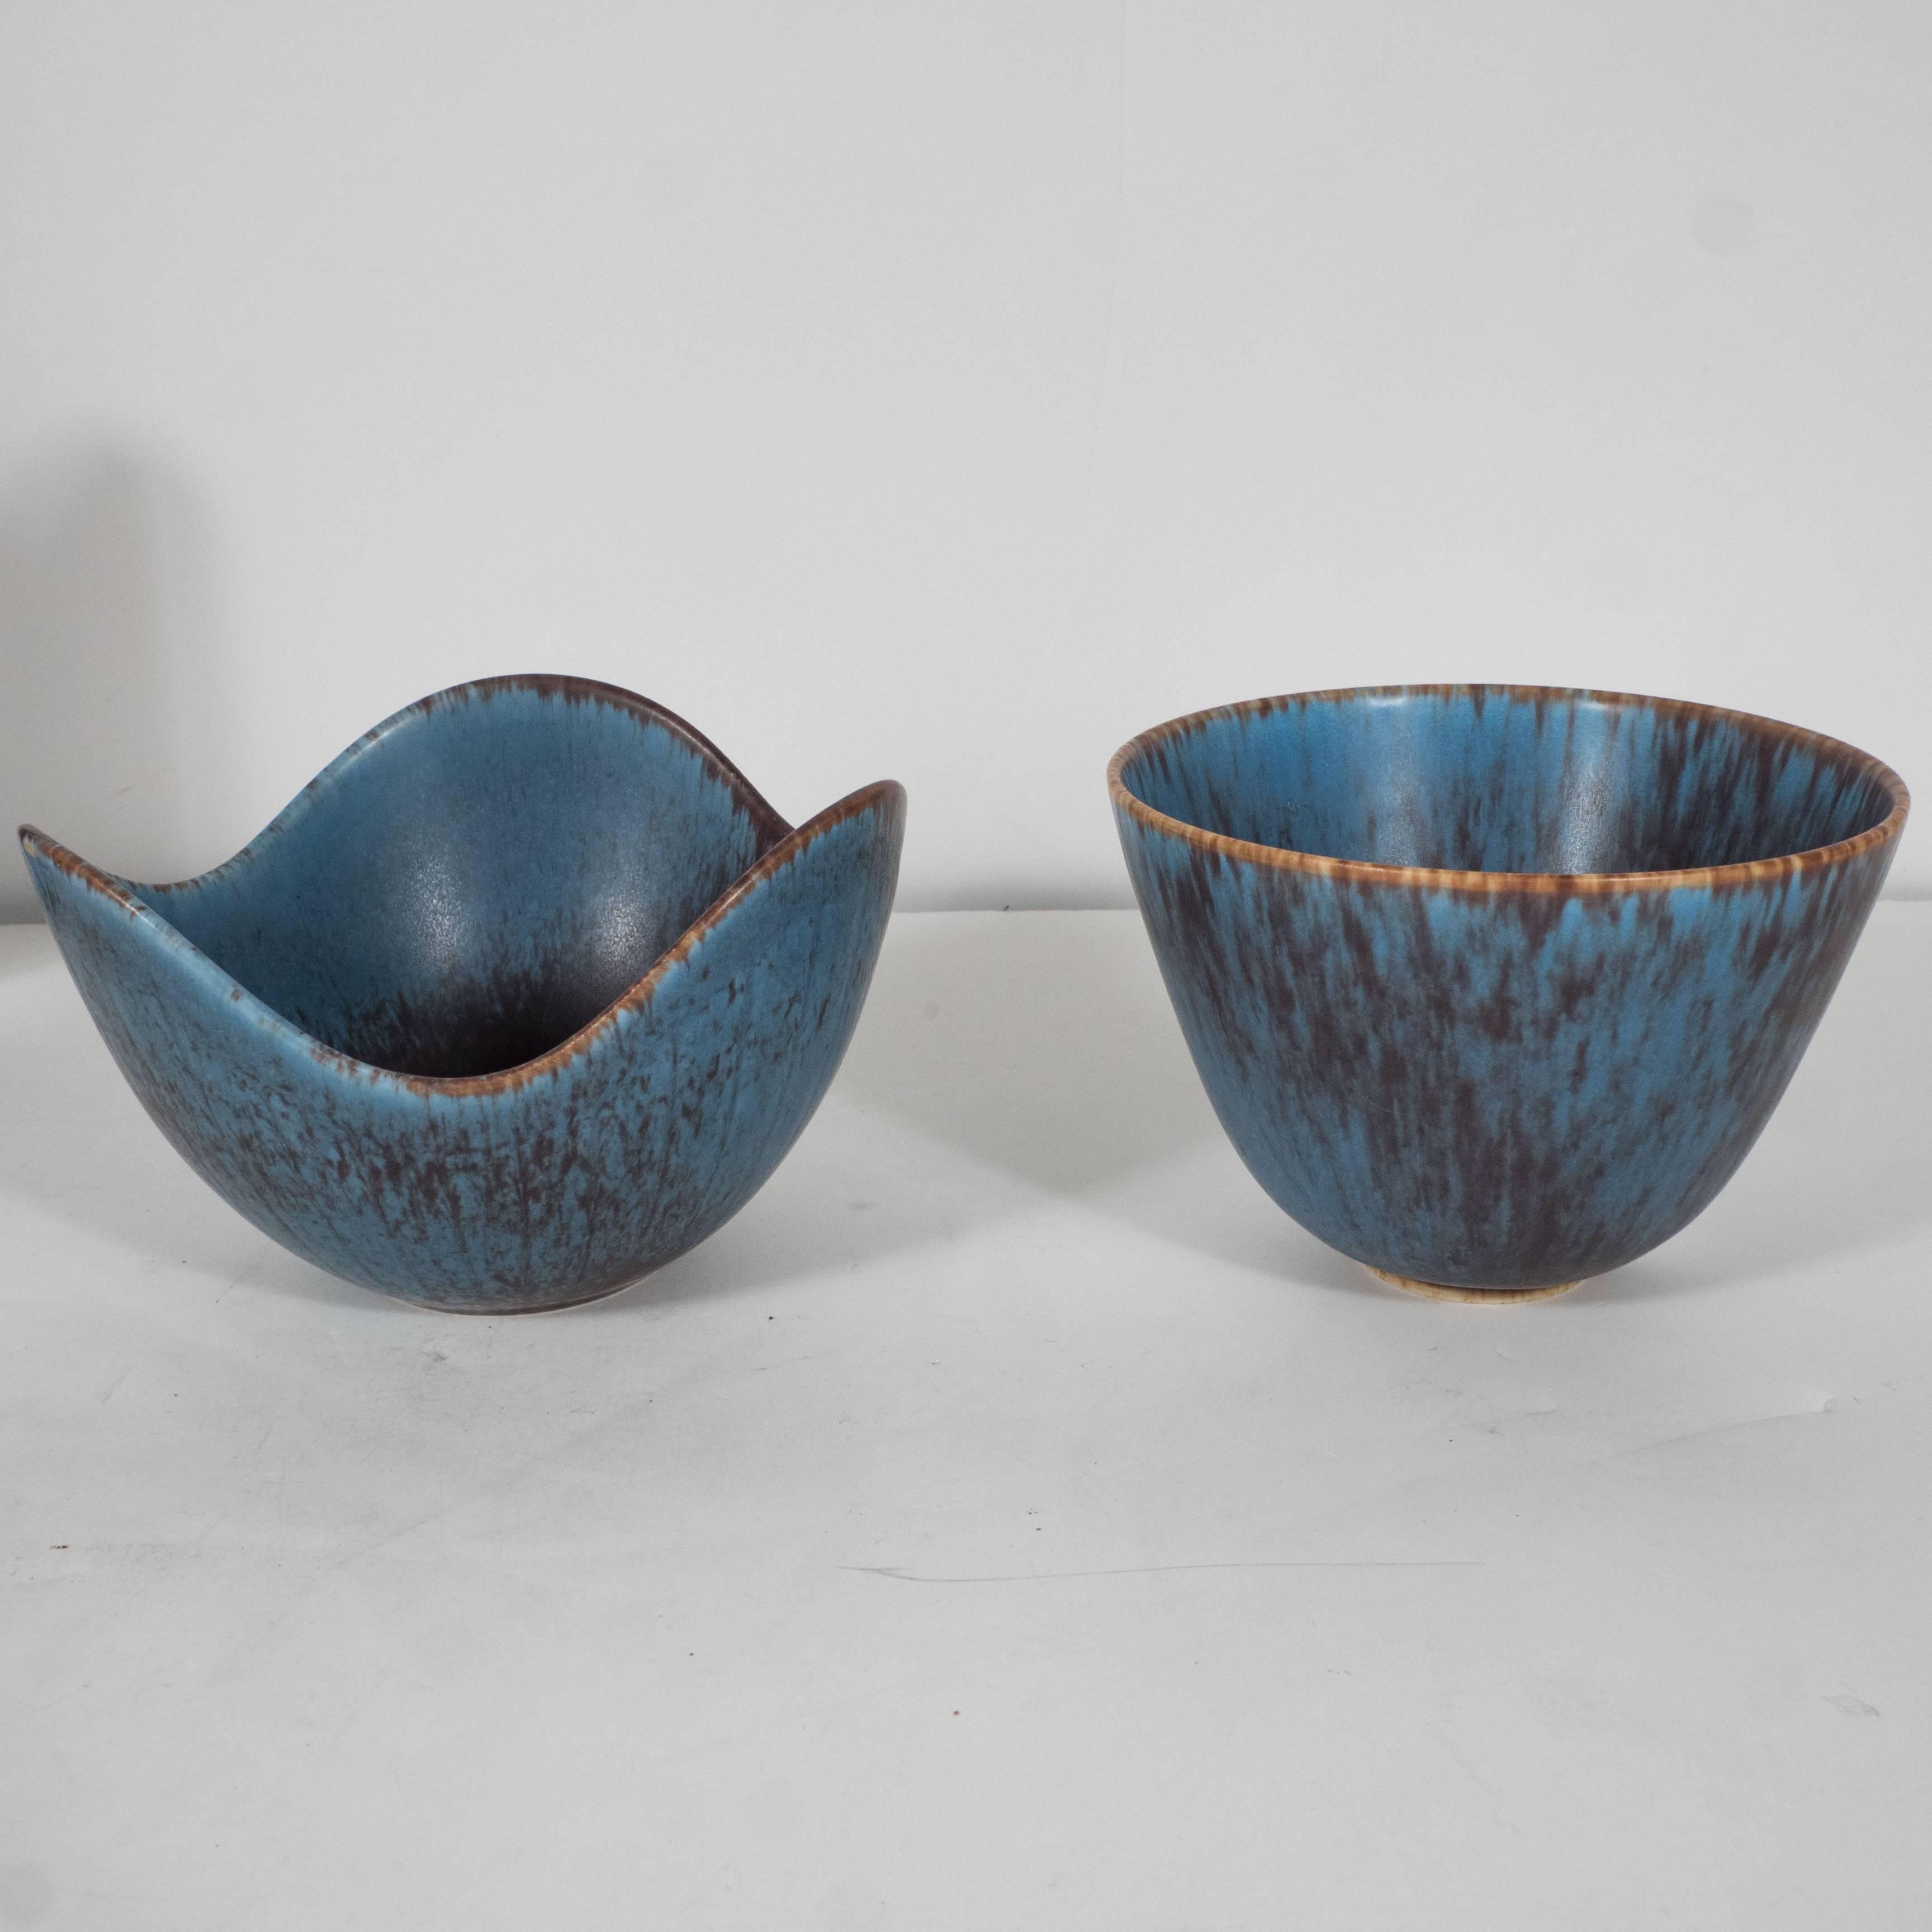 Set of four blue Swedish ceramics. A- H: 3.5 diameter: 5.75 in. C- H: 8 diameter: 1.5 in. 
B- H: 3.5 diameter: 5 in. D- H: 7 diameter: 4.25 in.
  